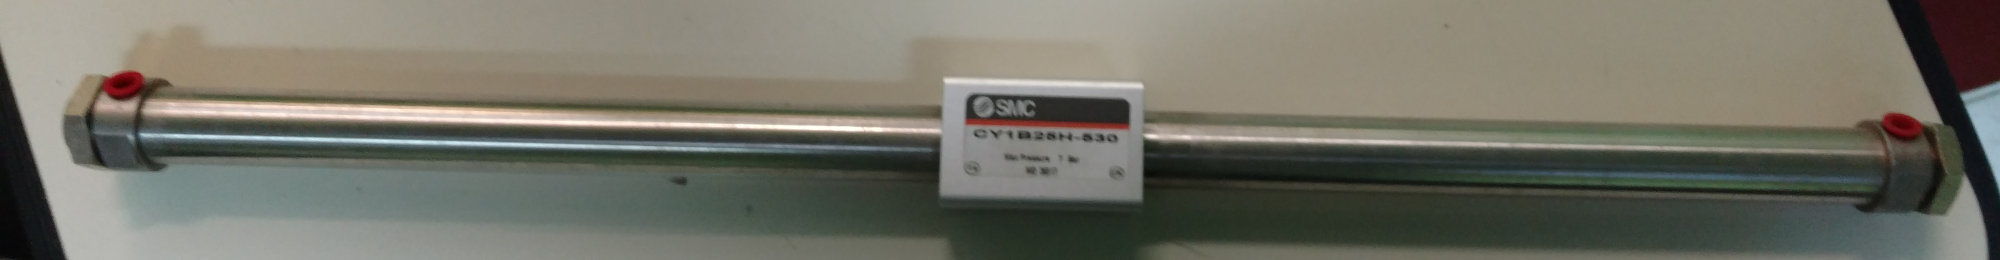 SMC INR-499-207 